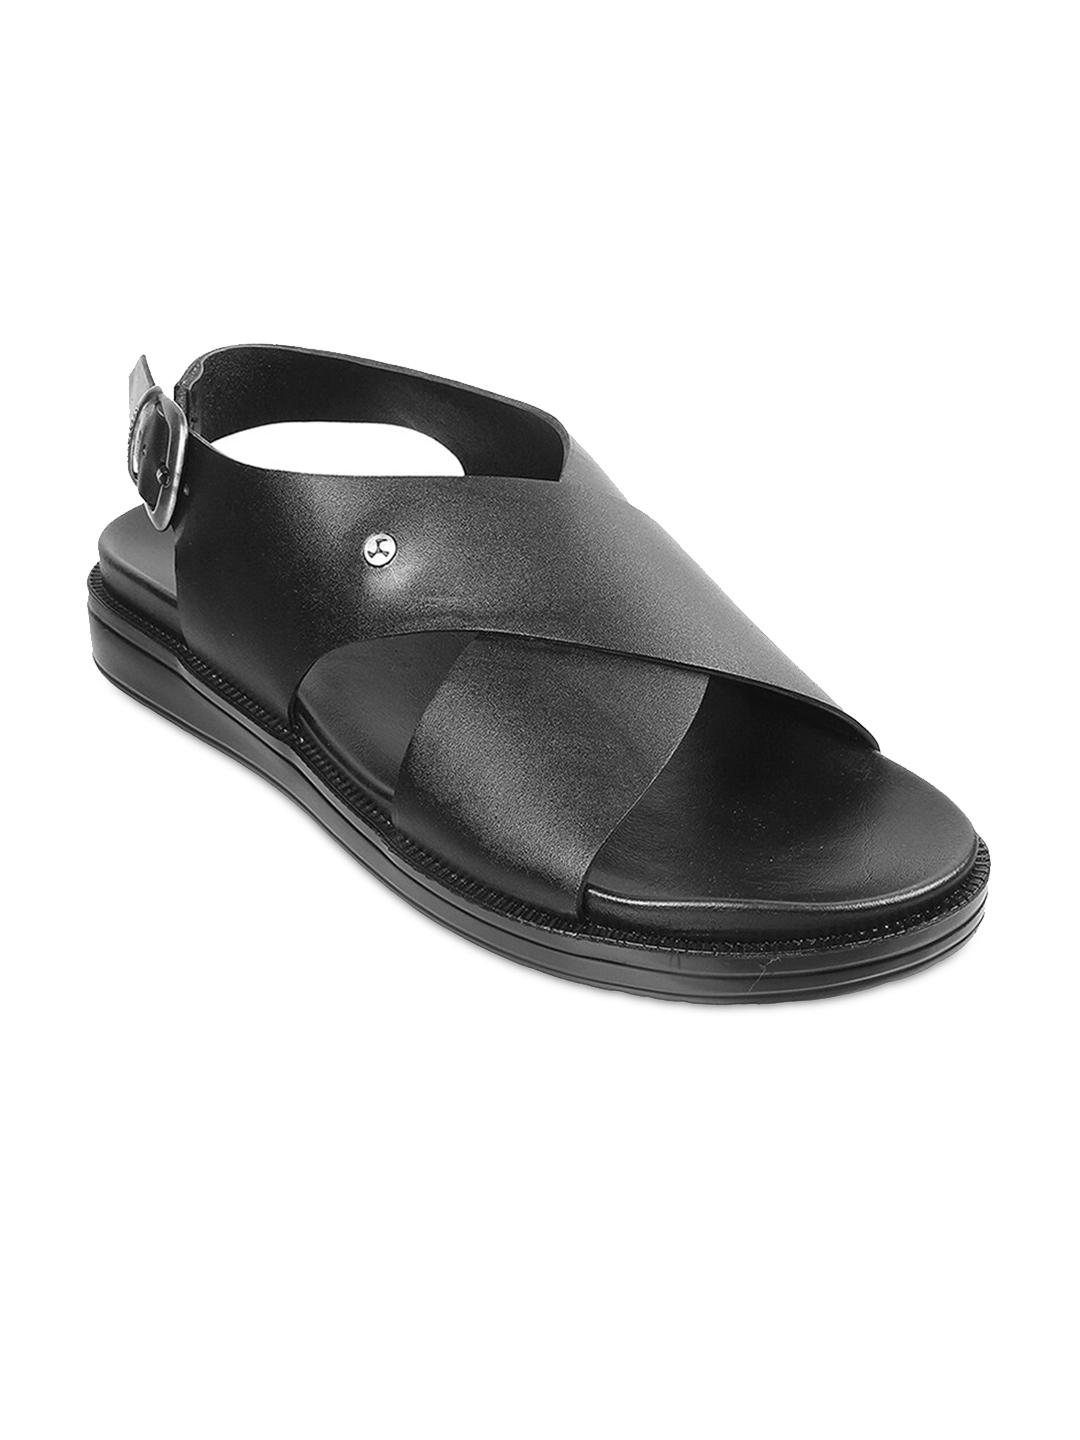 Buy Mochi Men Black Leather Comfort Sandals - Sandals for Men 18997566 ...